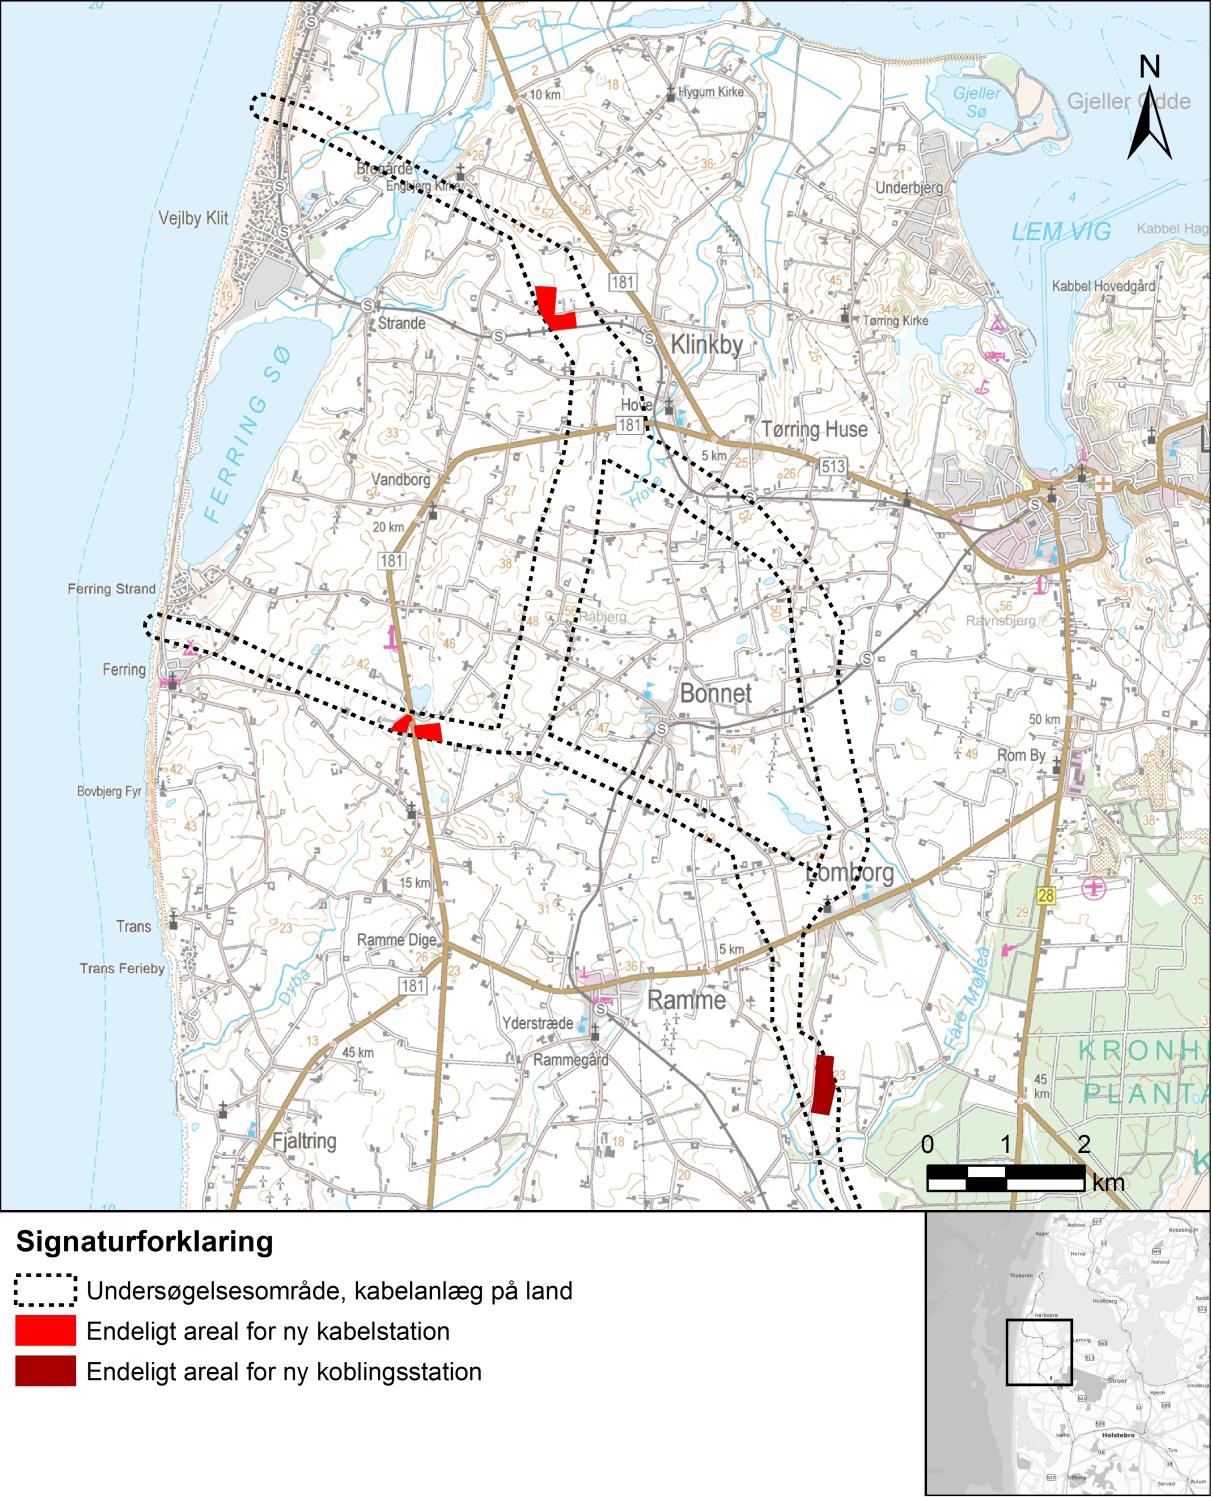 Figur 23-22. Endelige arealer for nye stationsanlæg og undersøgelsesområde for kabelanlæg på land.